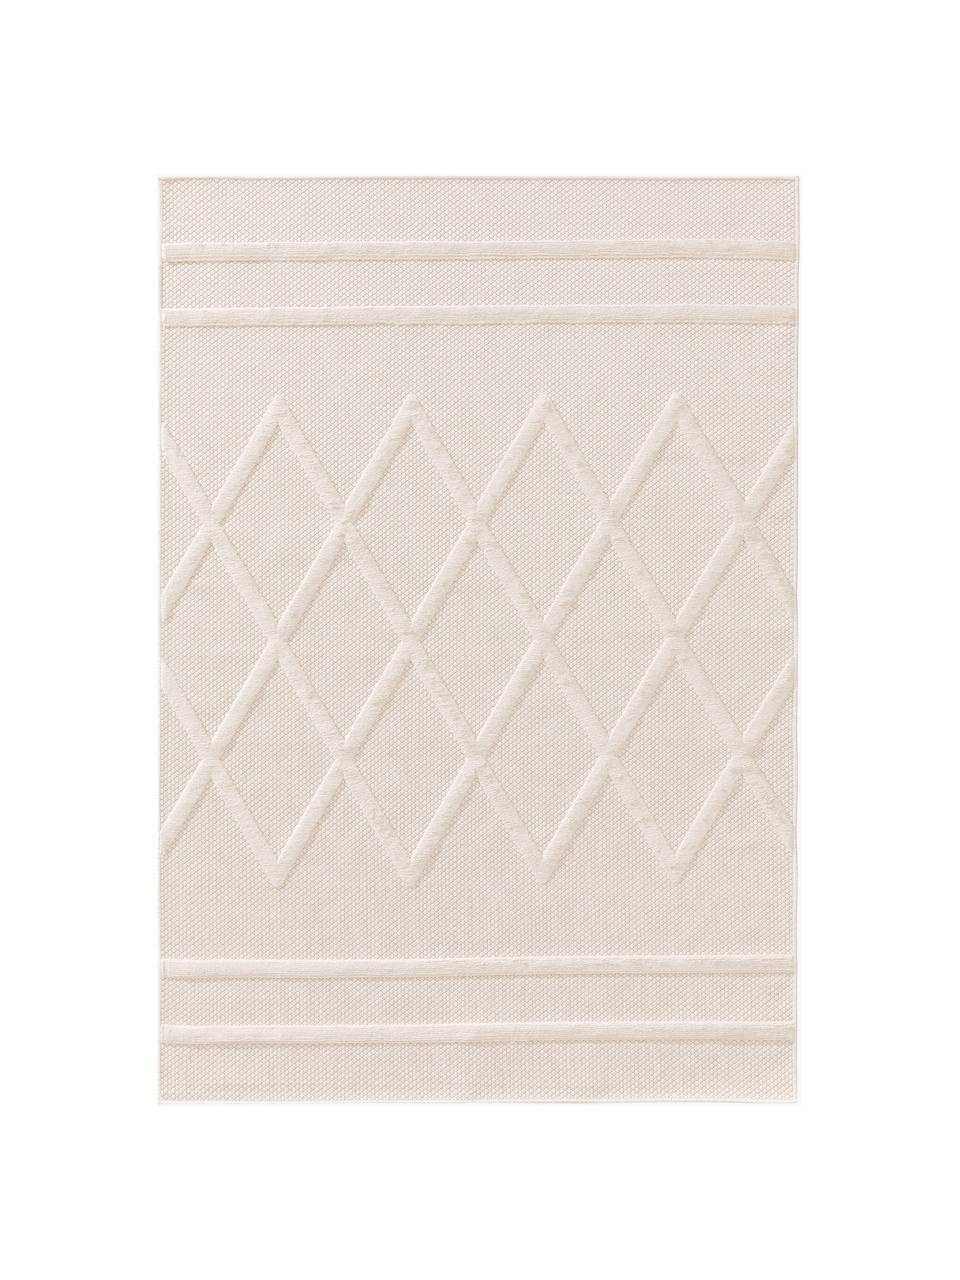 Tappeto fatto a mano da interno-esterno con effetto alto-basso Bonte, 100% polipropilene, Bianco crema, Larg. 120 x Lung. 170 cm (taglia S)